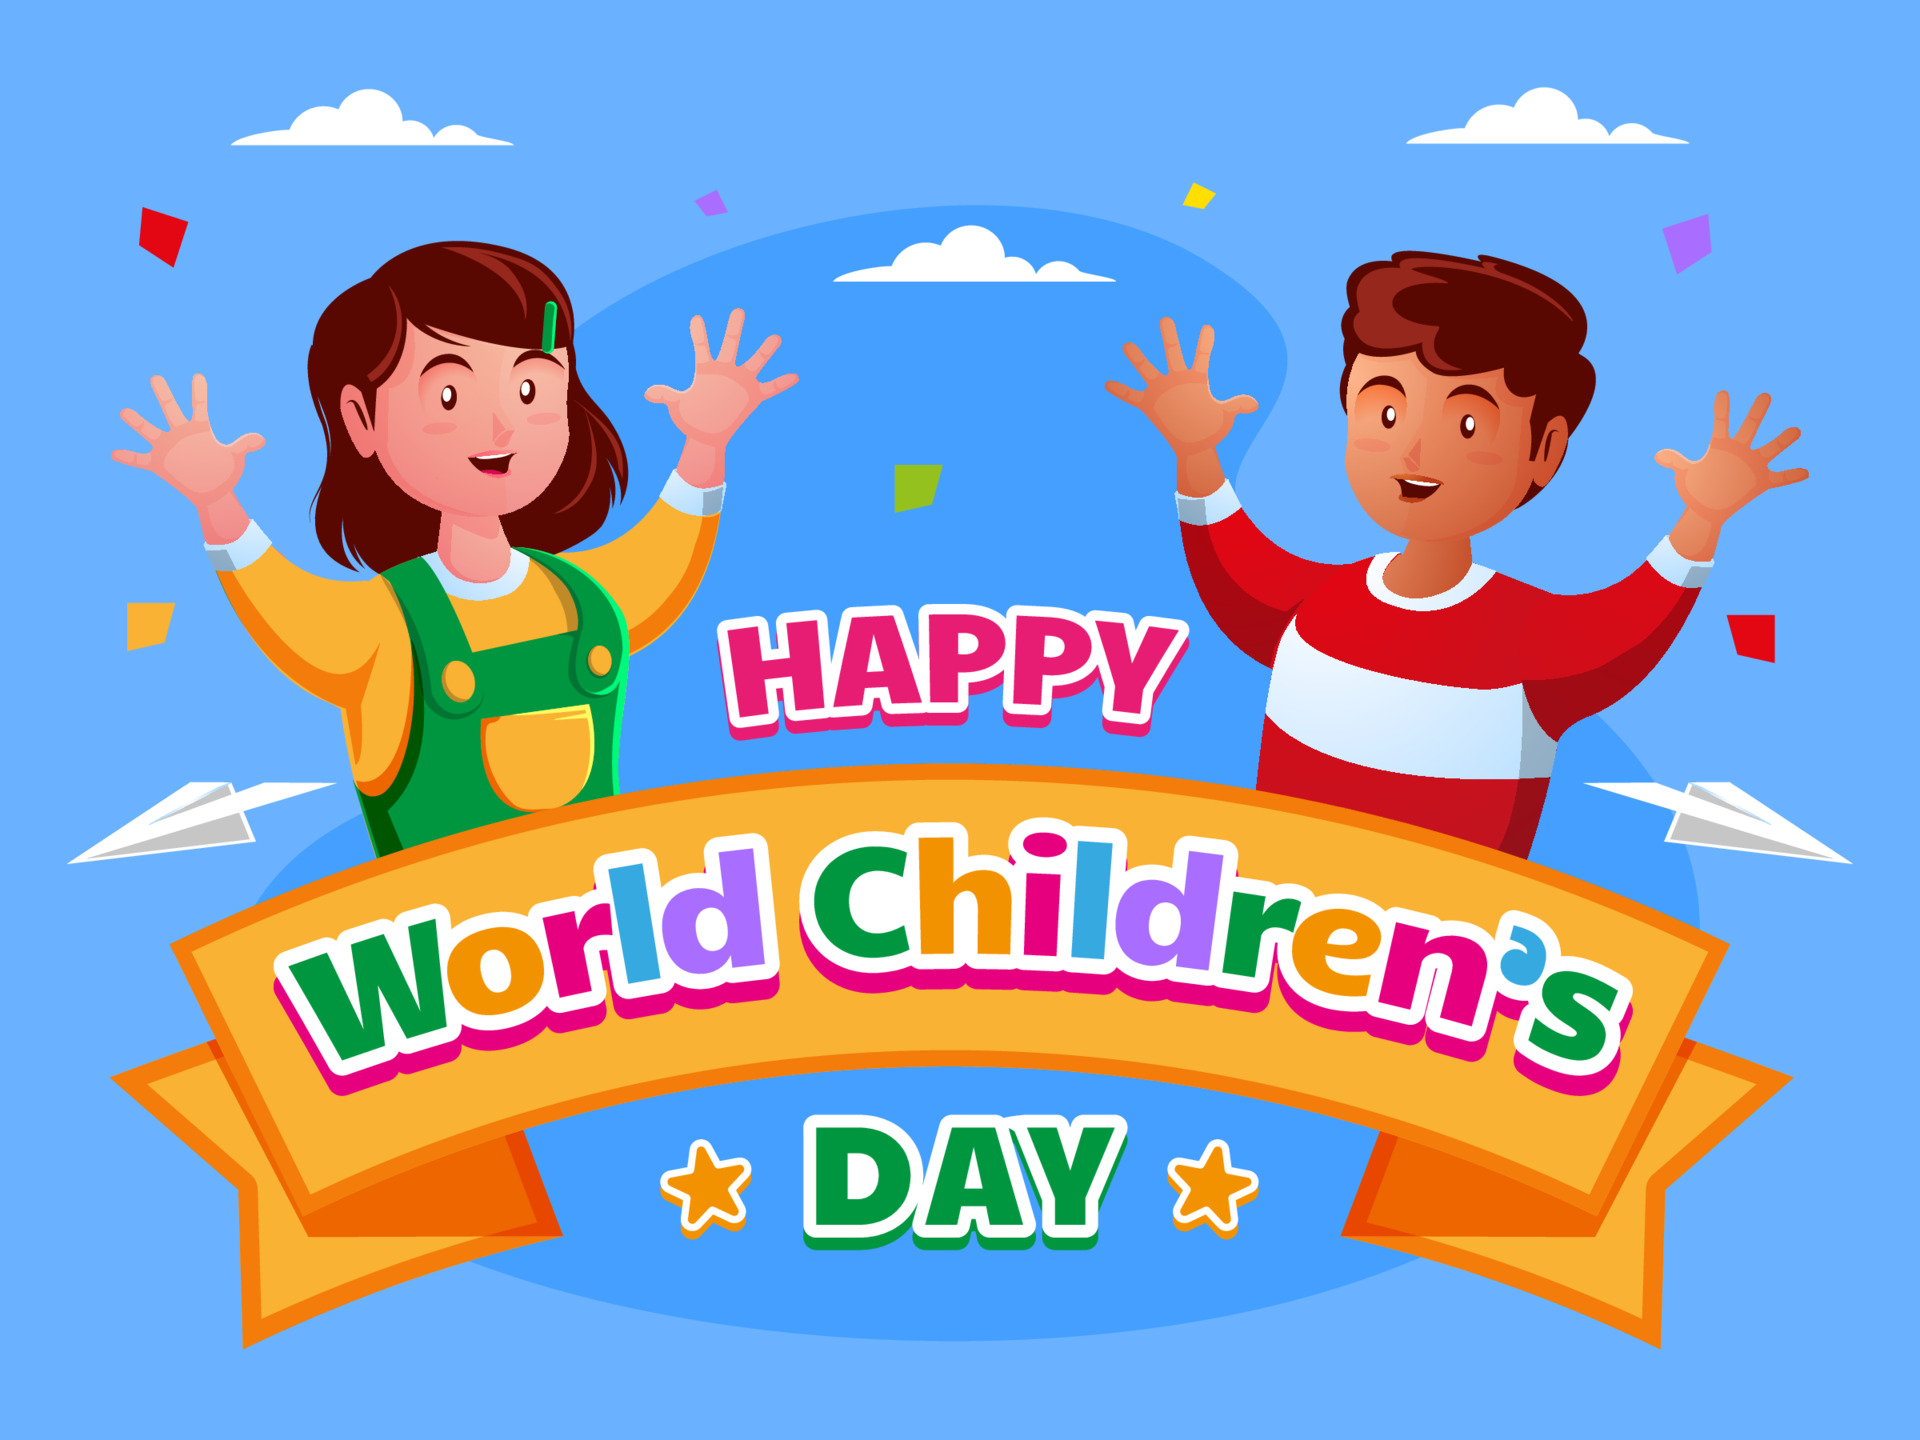 Happy world children day 3486124 Vector Art at Vecteezy